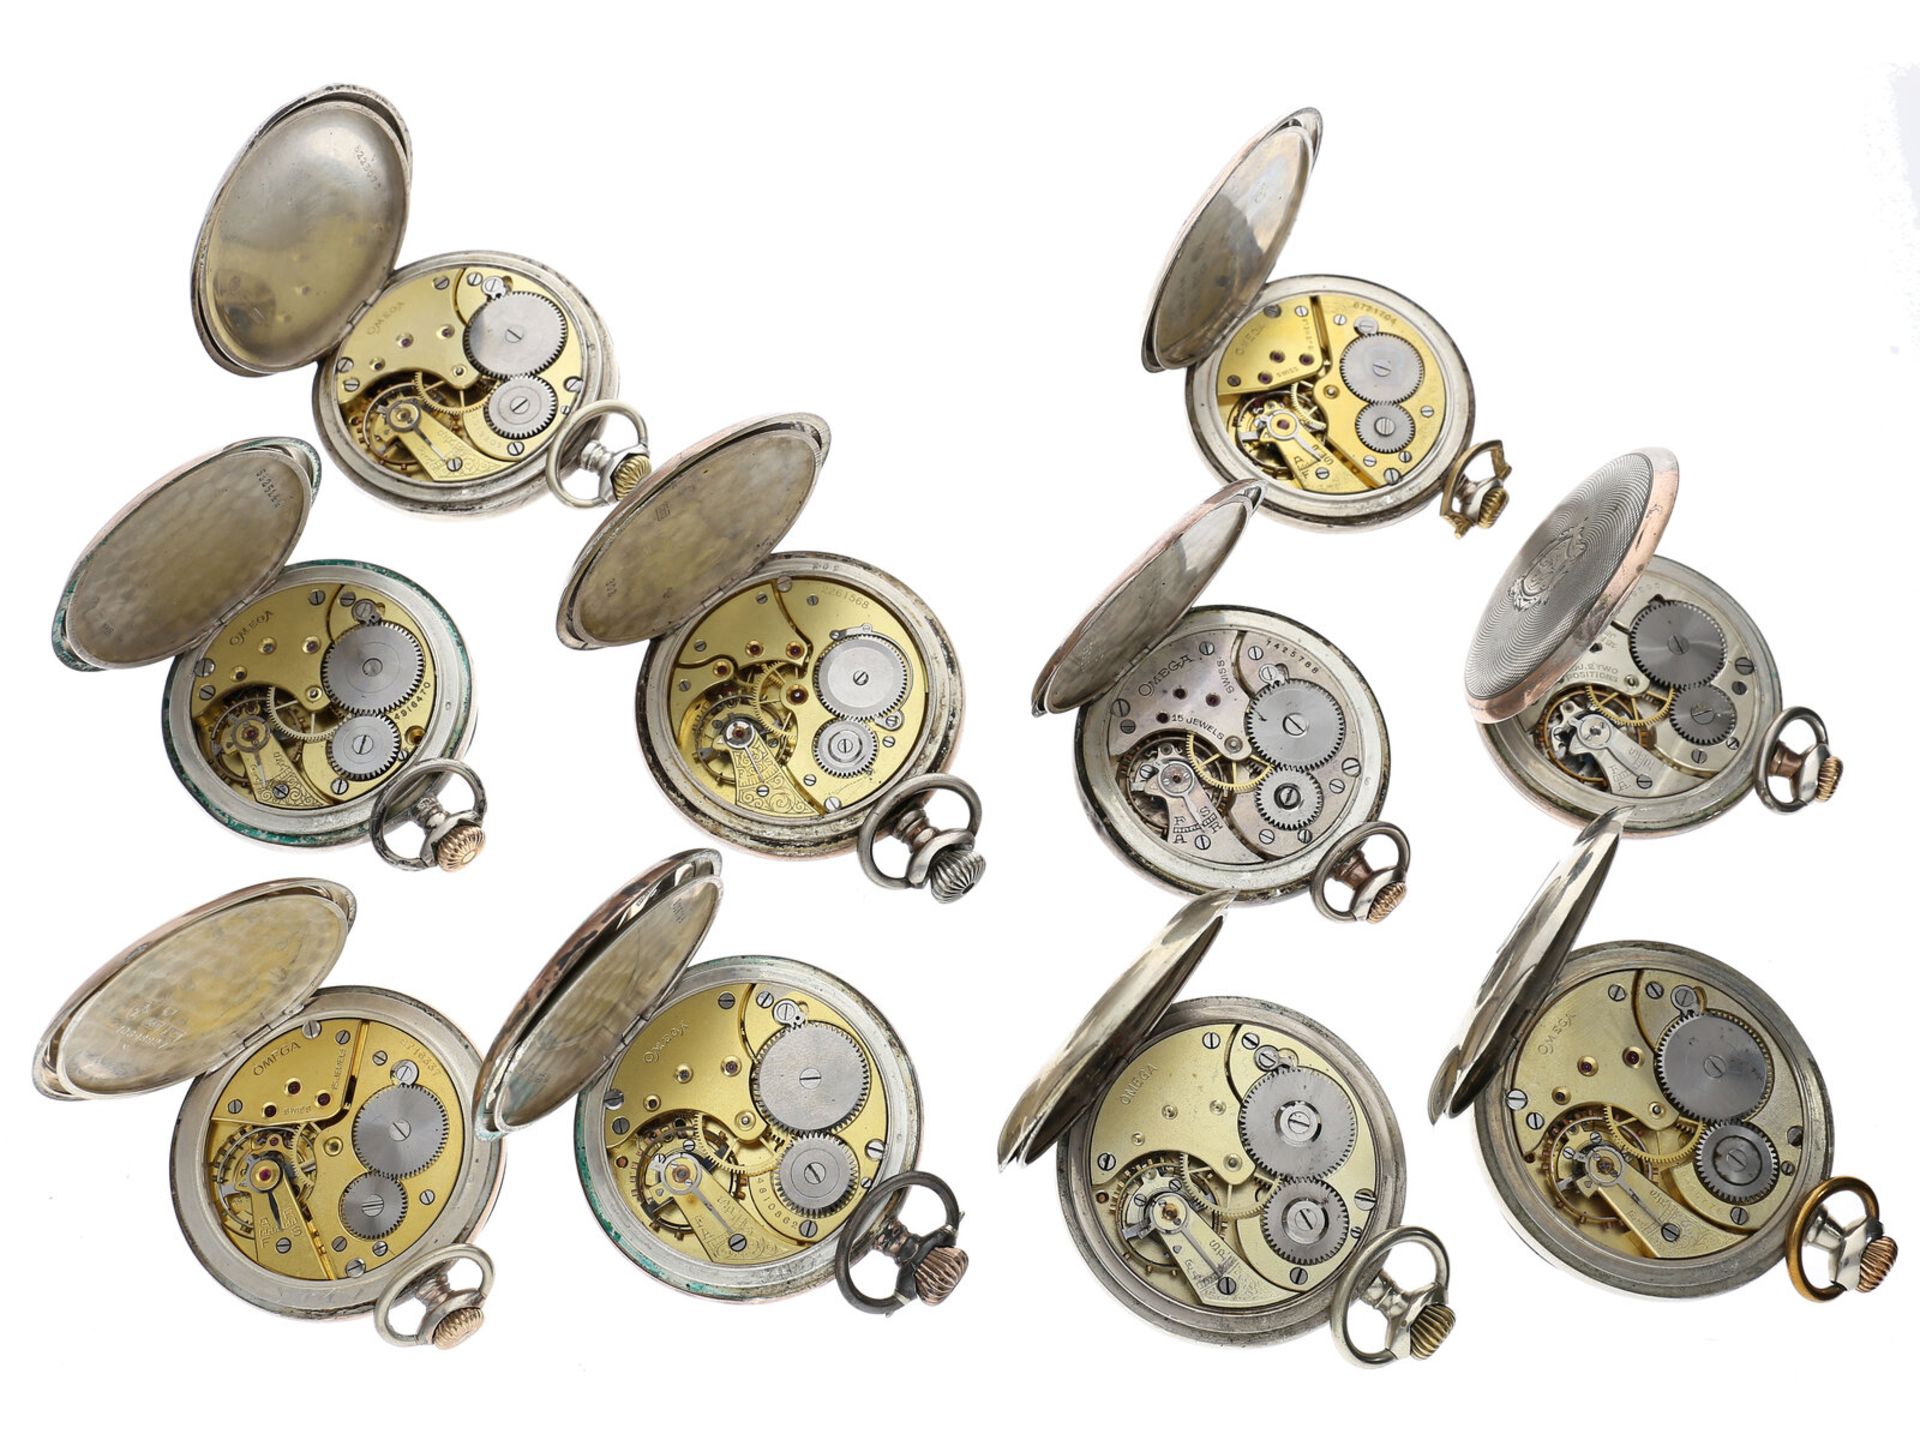 Taschenuhr: Konvolut von 10 Taschenuhren, überwiegend Omega, ca. 1900-1930 - Bild 2 aus 2